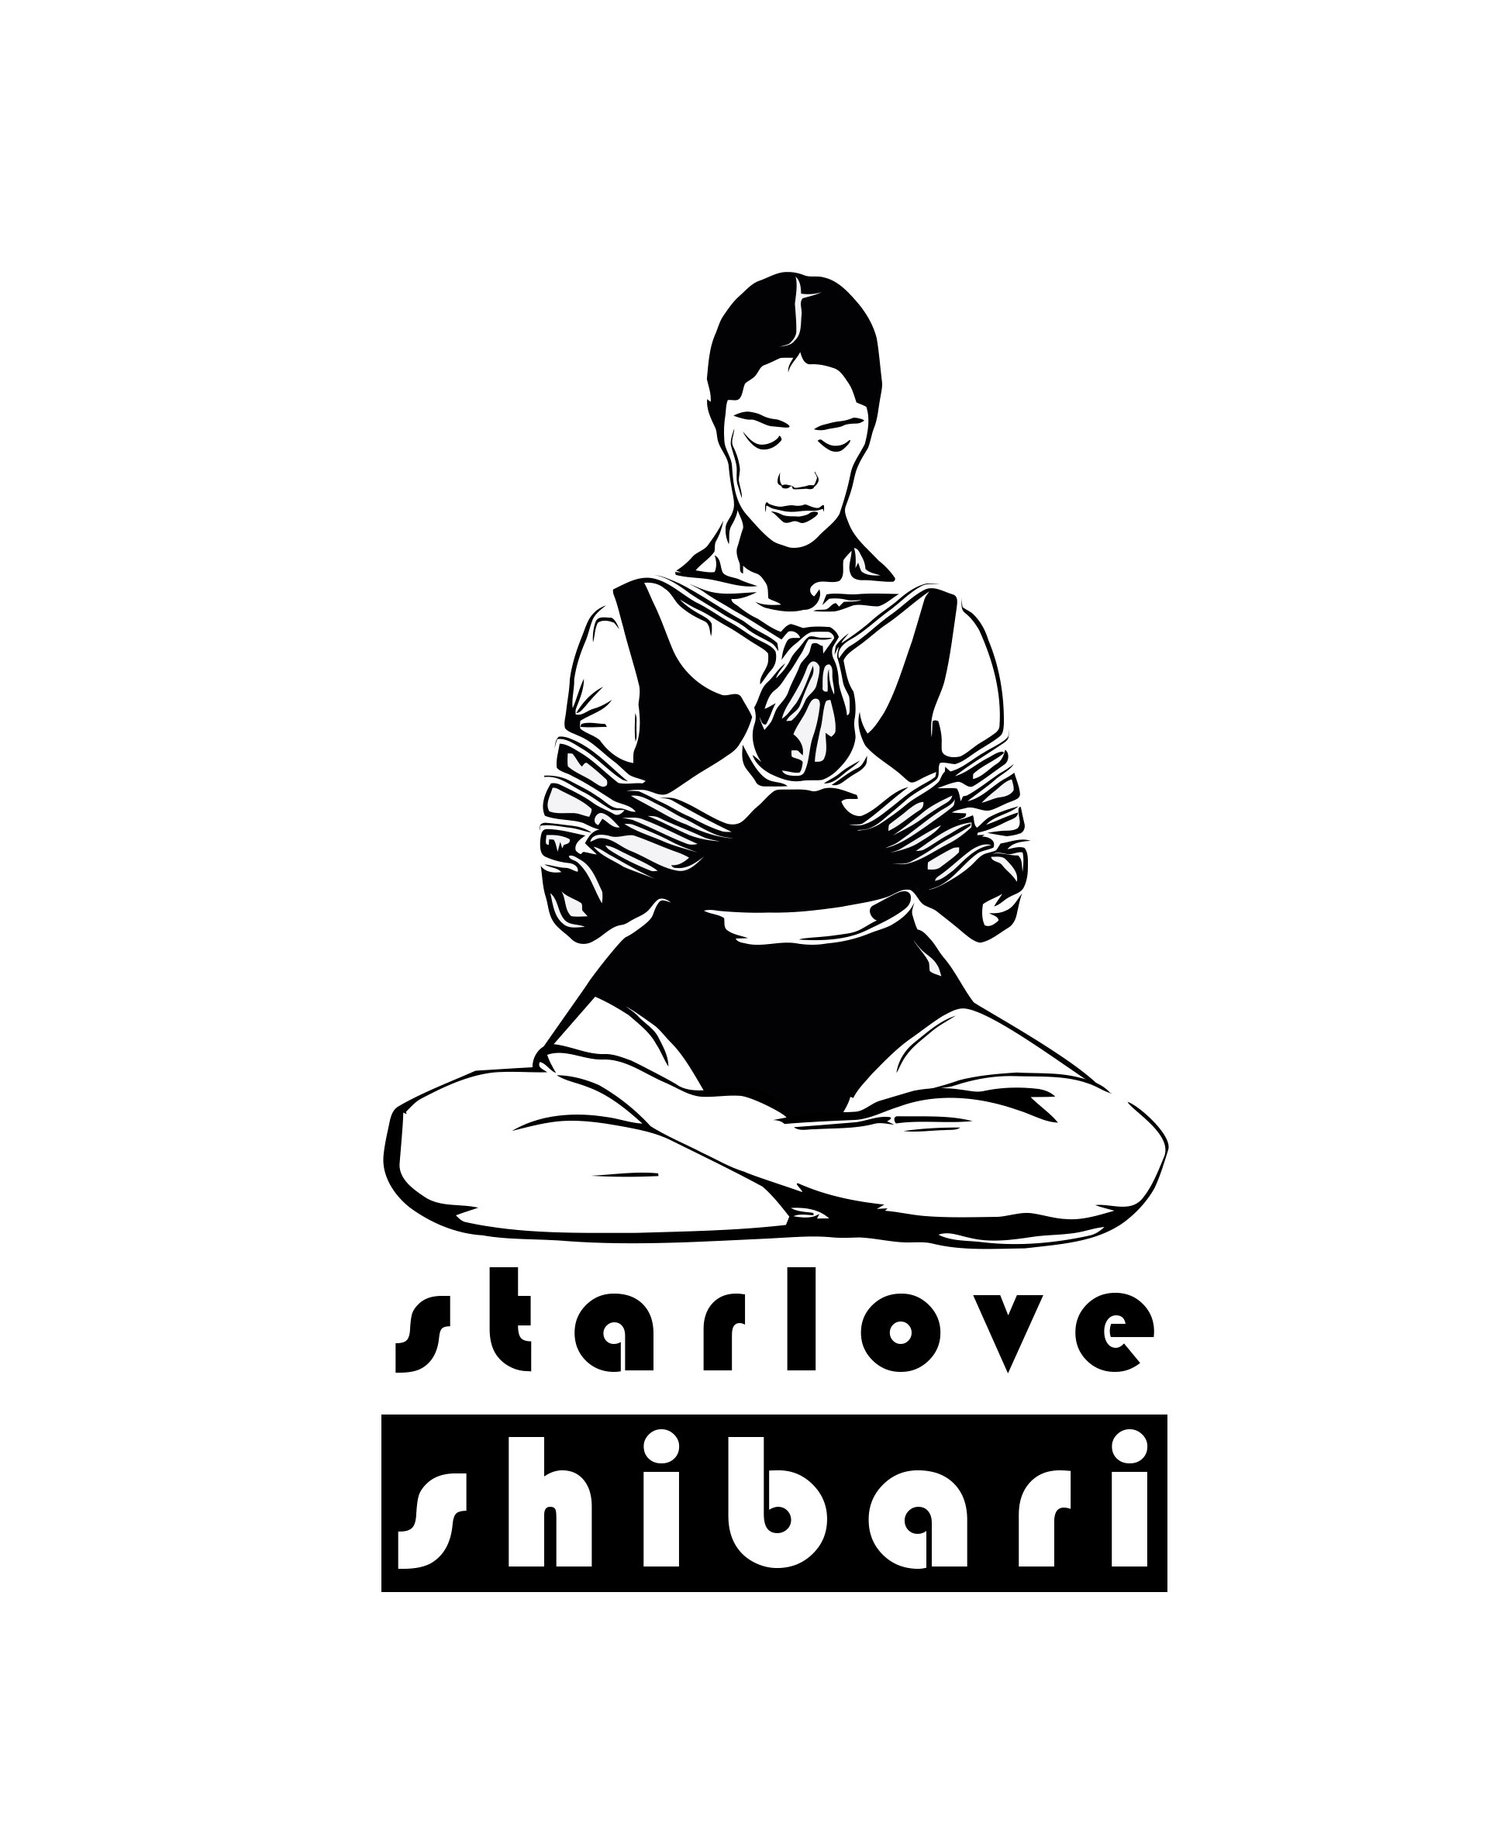 starlove_shibari